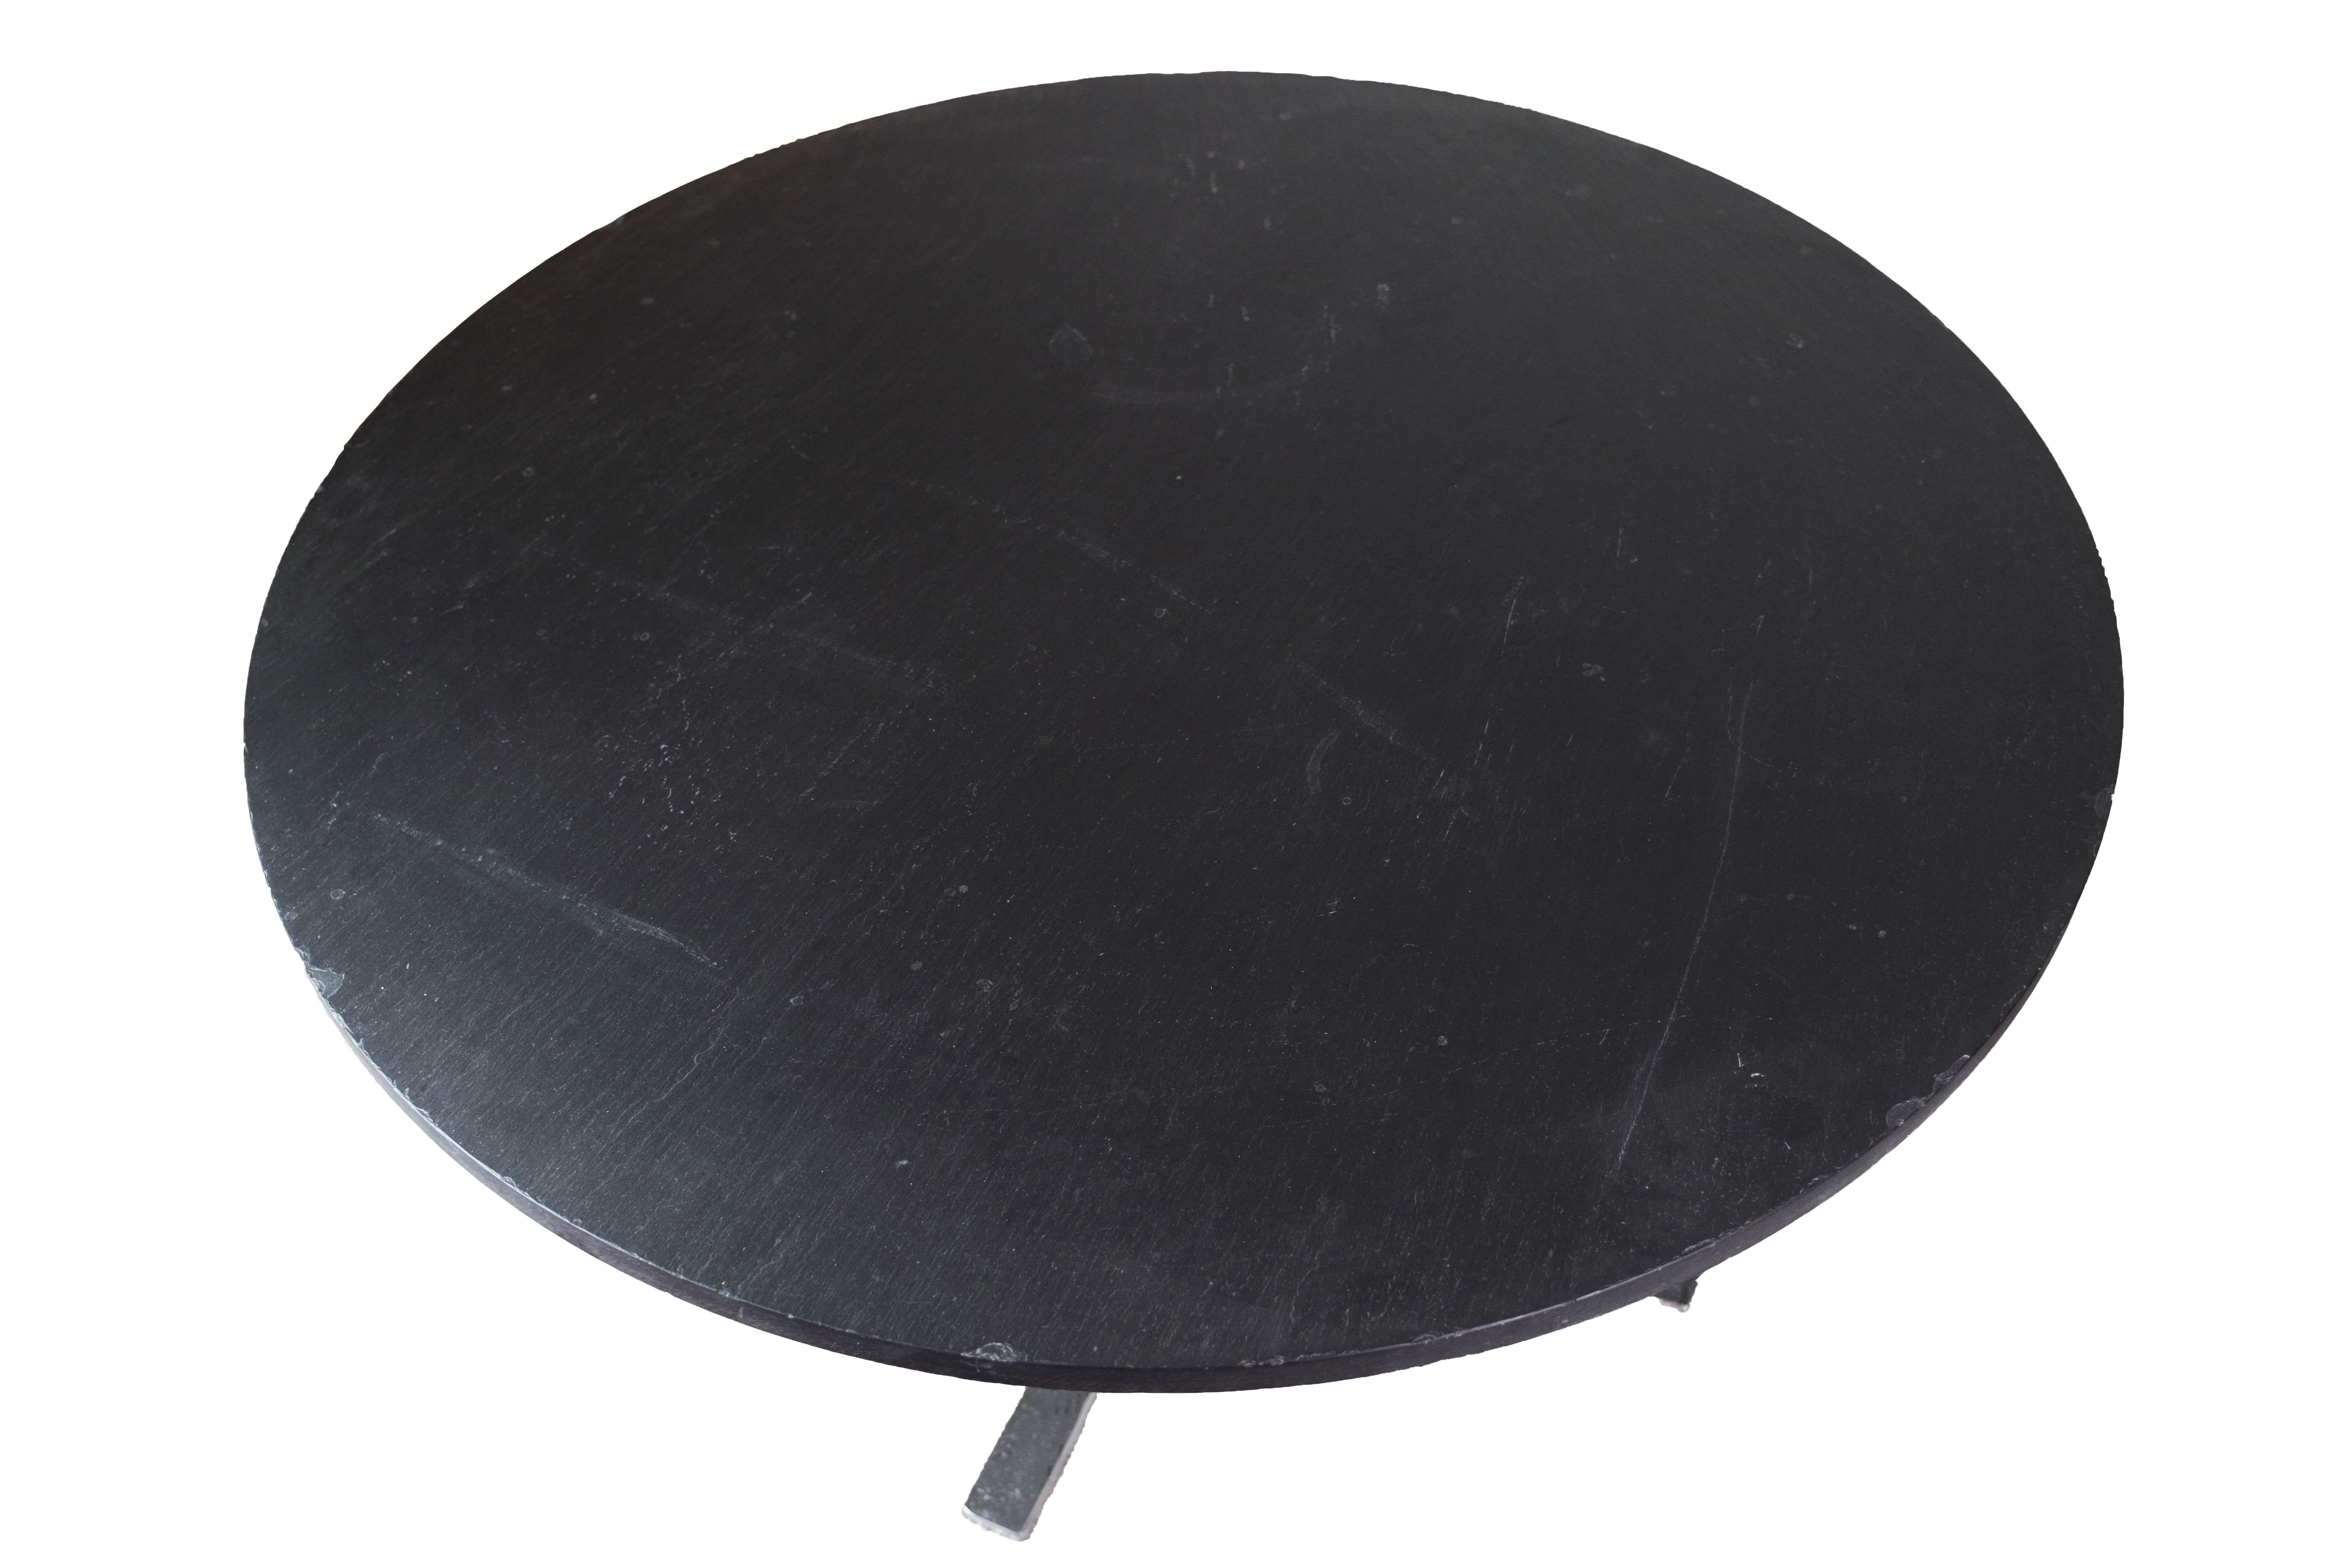 
Cette table basse ronde avec un plateau en ardoise noire, conçue par Sigurd Ressell Falcon dans les années 1960, est une pièce frappante qui résume l'essence du design moderne du milieu du siècle.

Fabriquée avec des lignes épurées et une